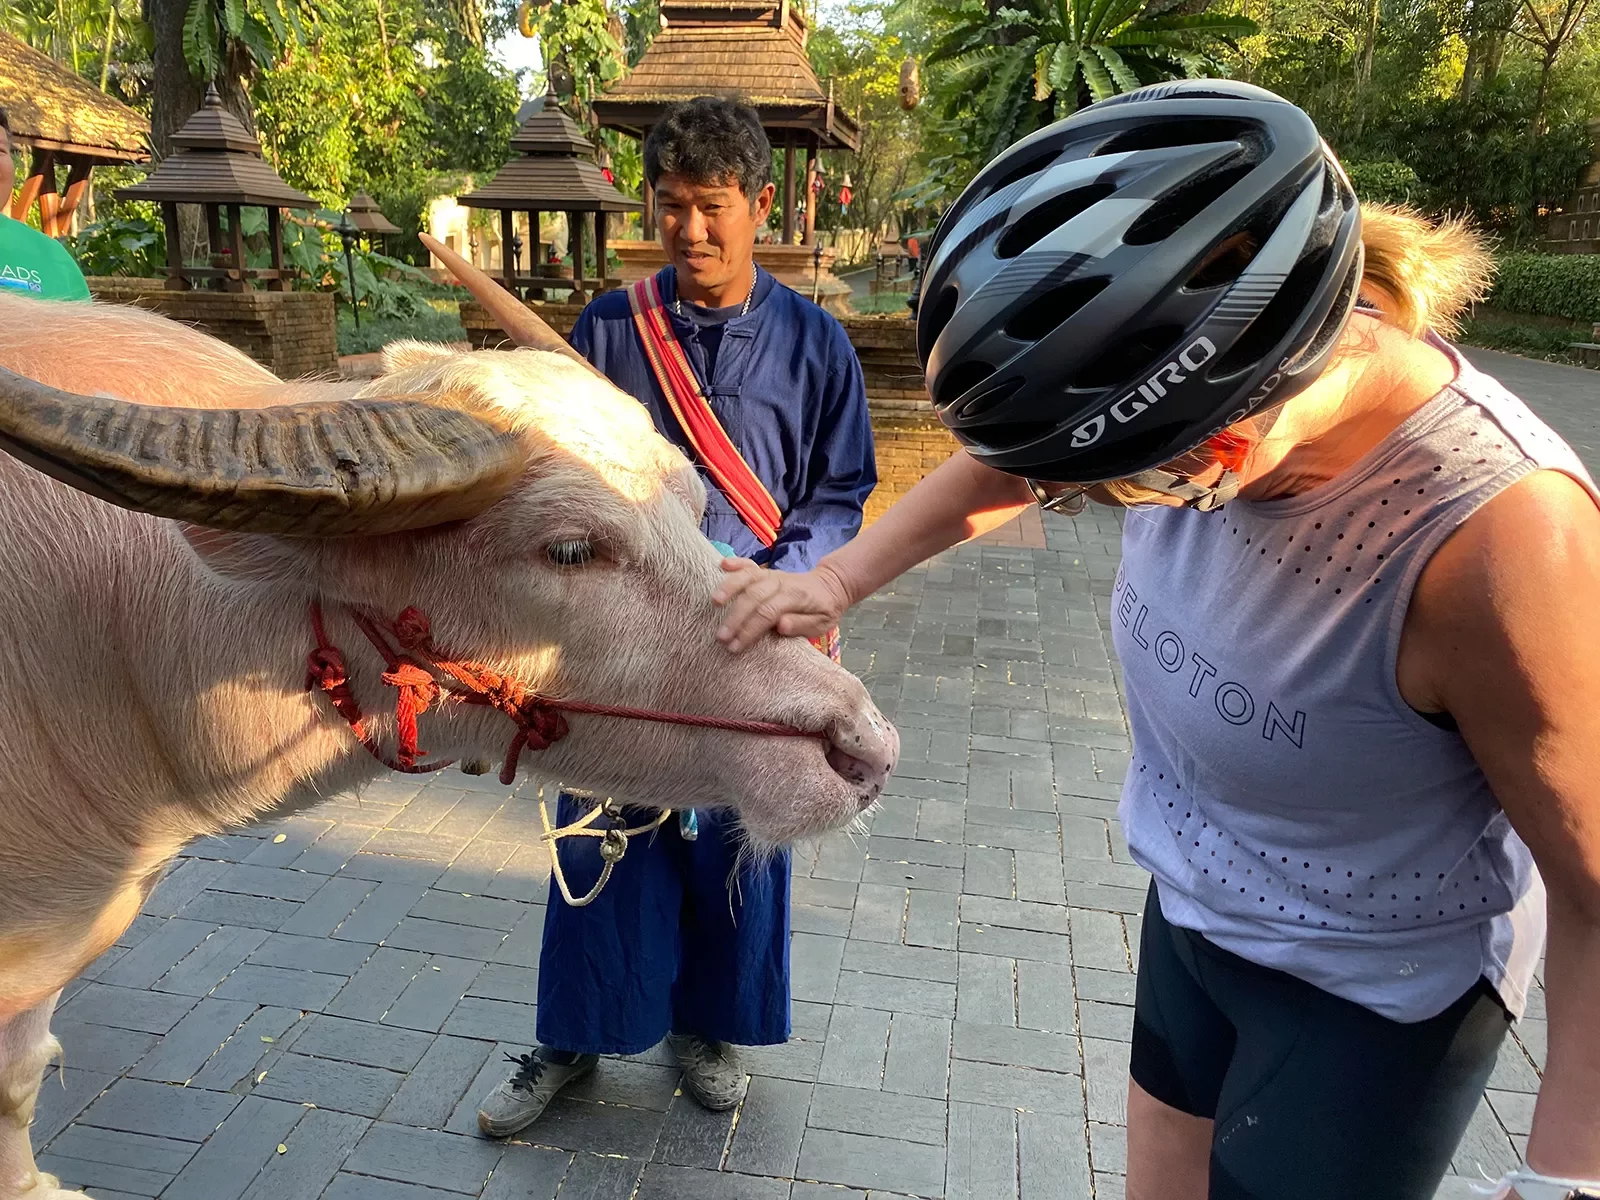 Woman in bike helmet petting animal